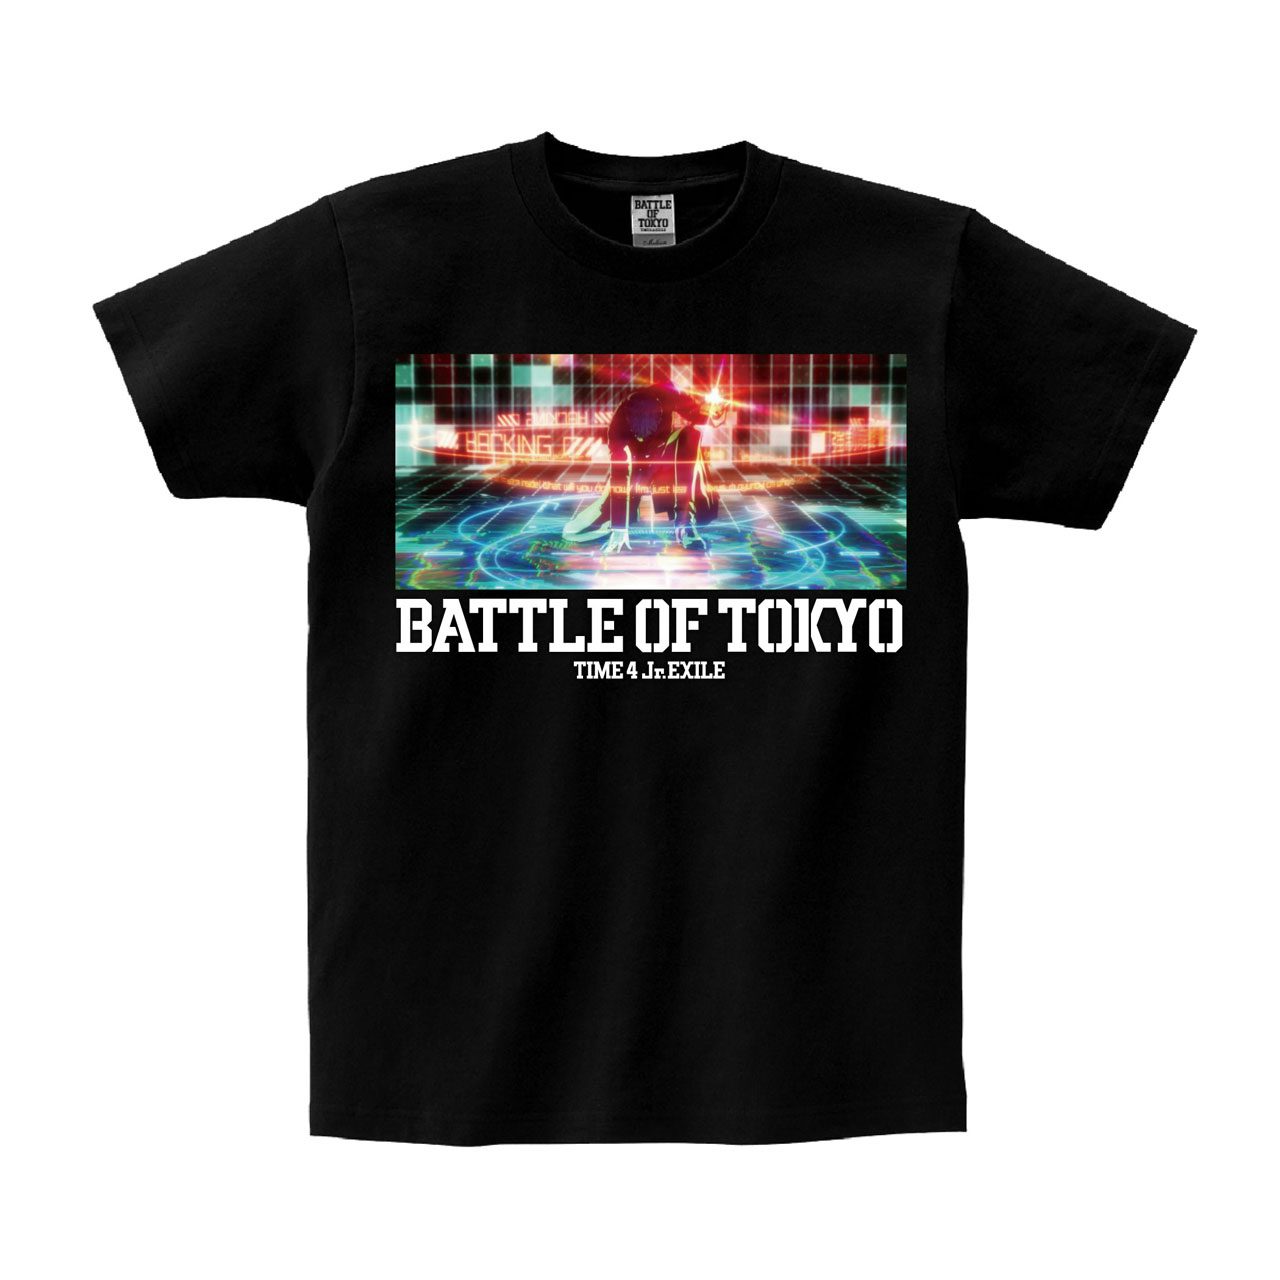 BATTLE OF TOKYO Shirts, BATTLE OF TOKYO Merch, BATTLE OF TOKYO